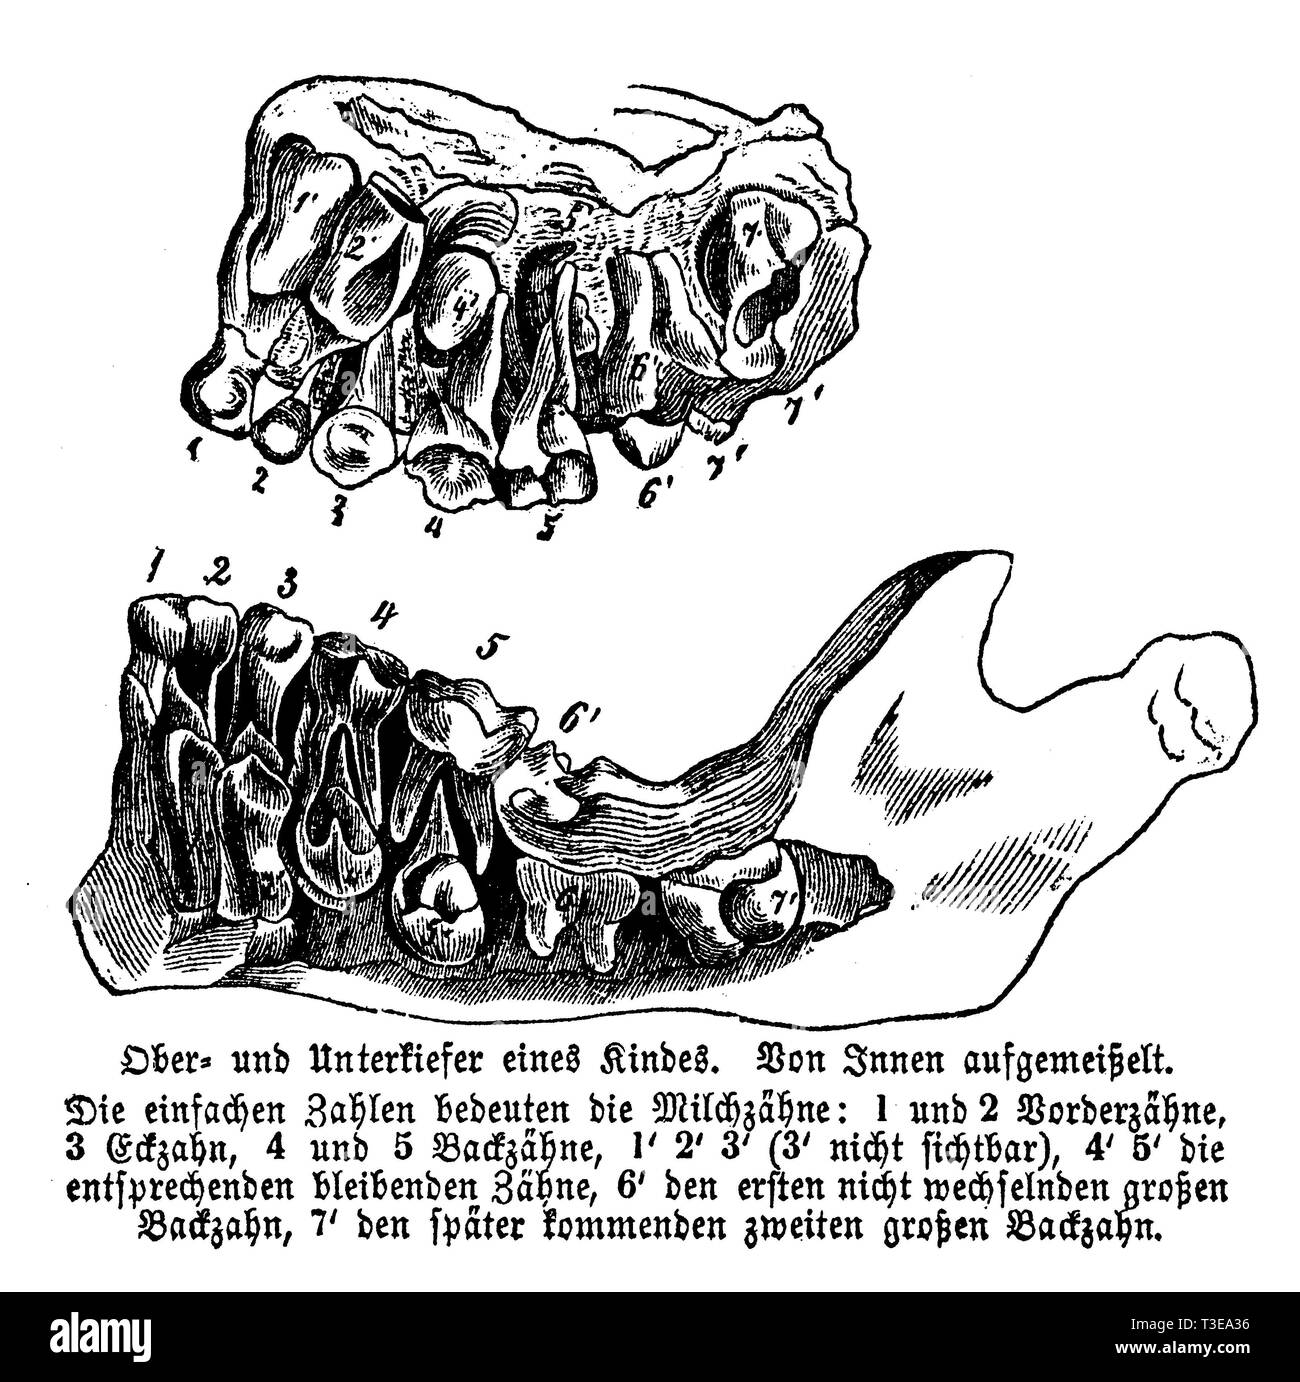 Gli esseri umani: mascelle superiore ed inferiore, anonym 1861 Foto Stock